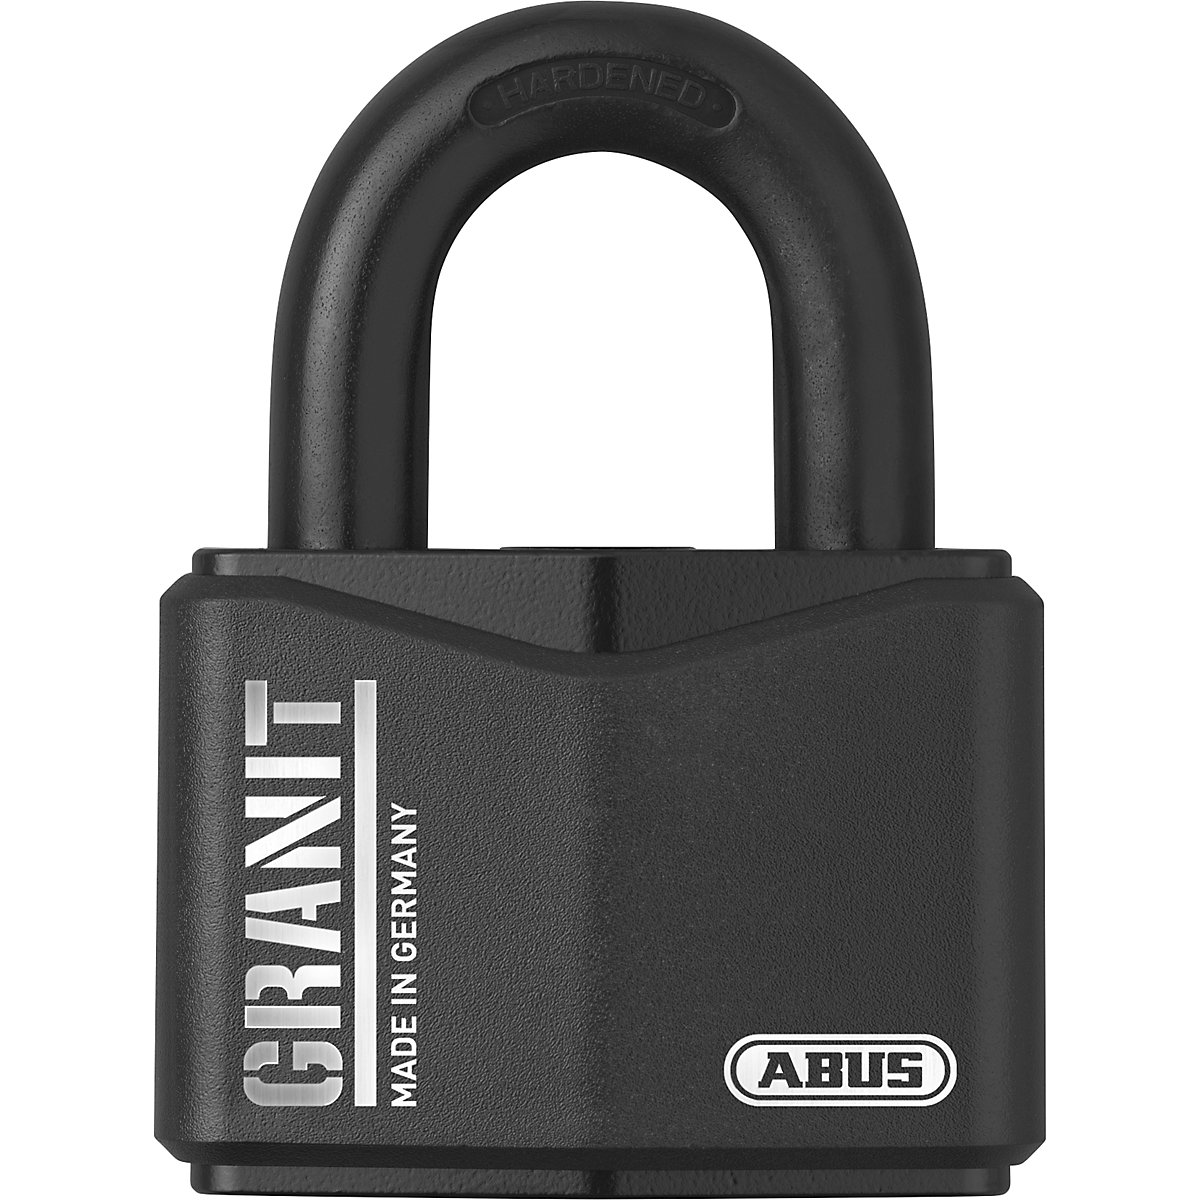 GRANIT™ padlock, steel – ABUS